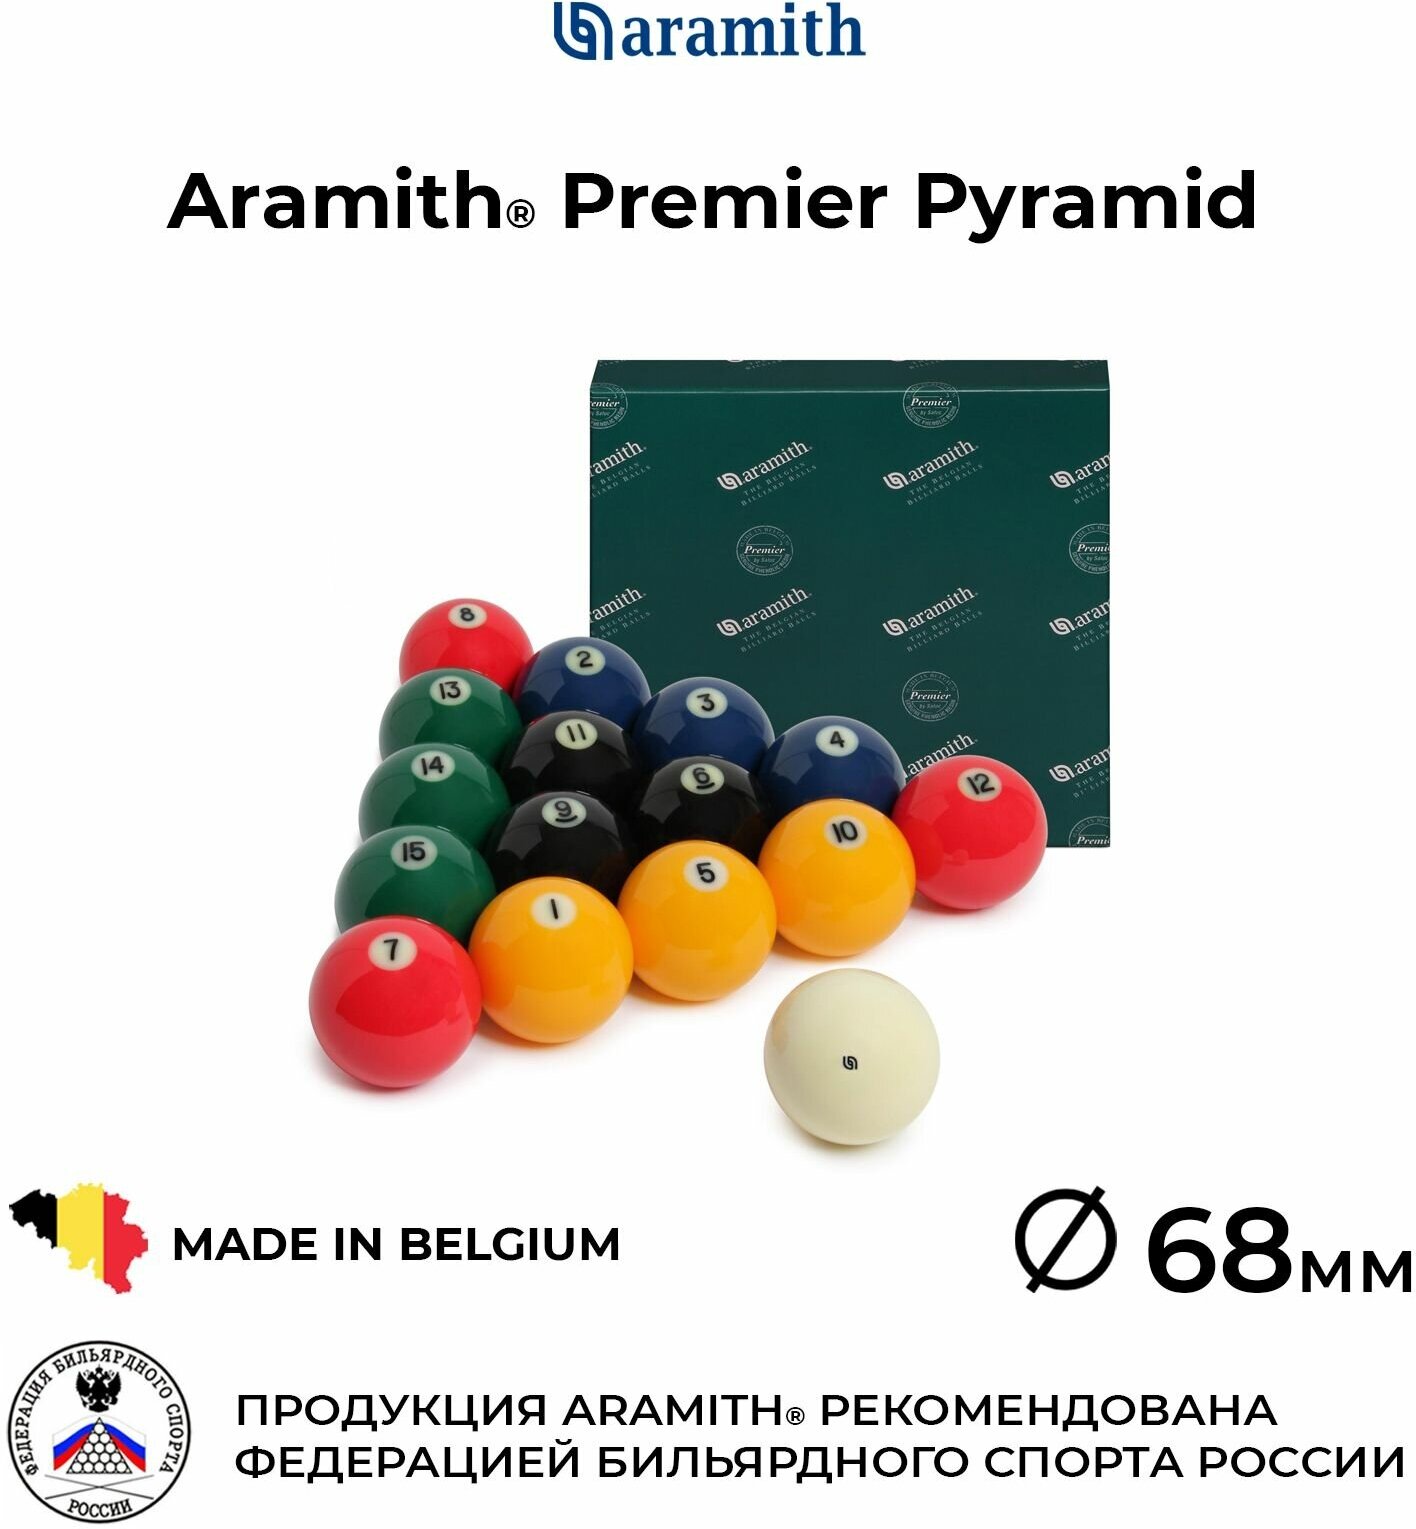 Бильярдные шары Арамит Премьер 68 мм для русской пирамиды цветные / Aramith Premier Pyramid Colour 68 мм белый биток с логотипом 16 шаров